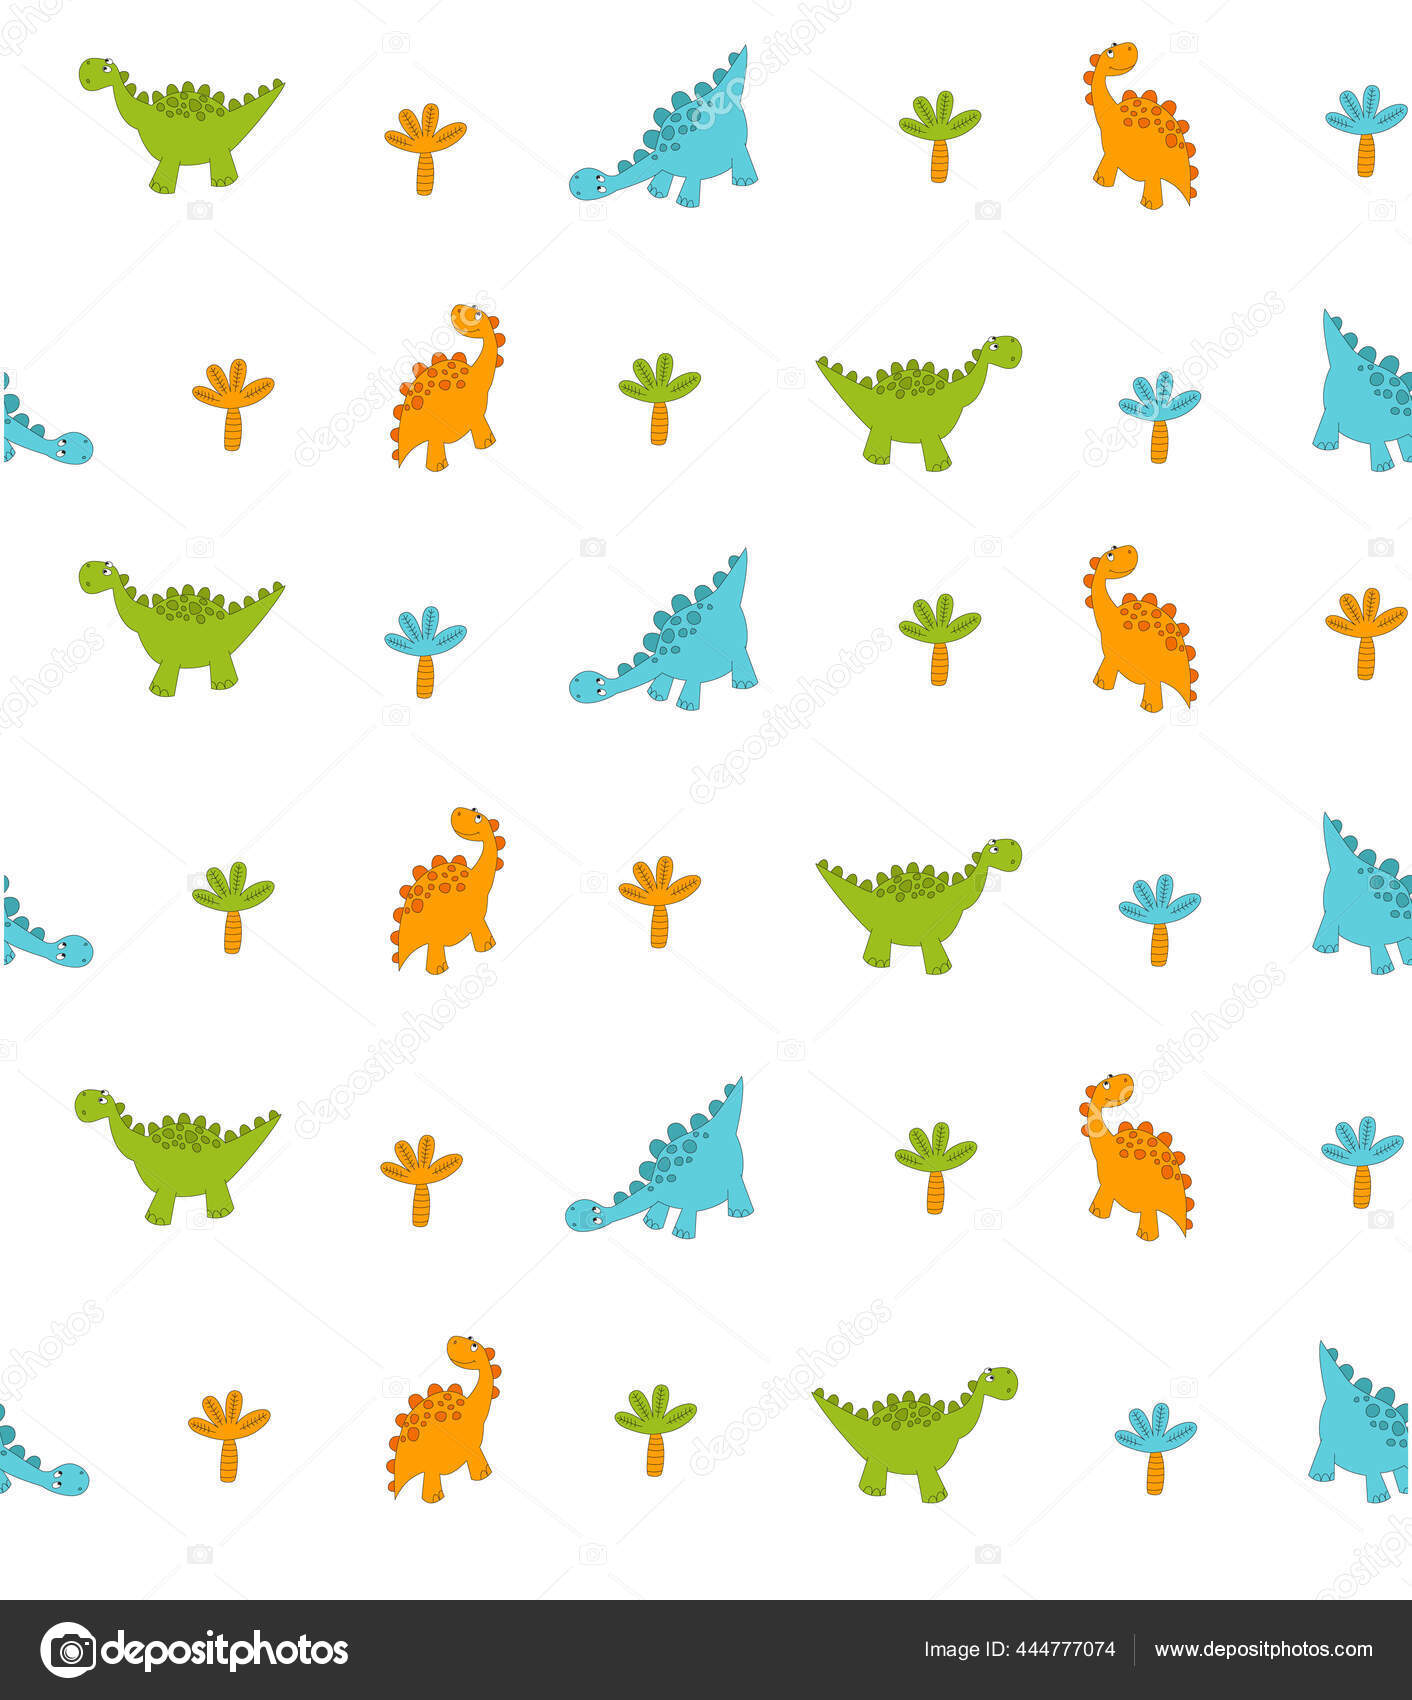 Vetores e ilustrações de Desenhos dinossauros imprimir para